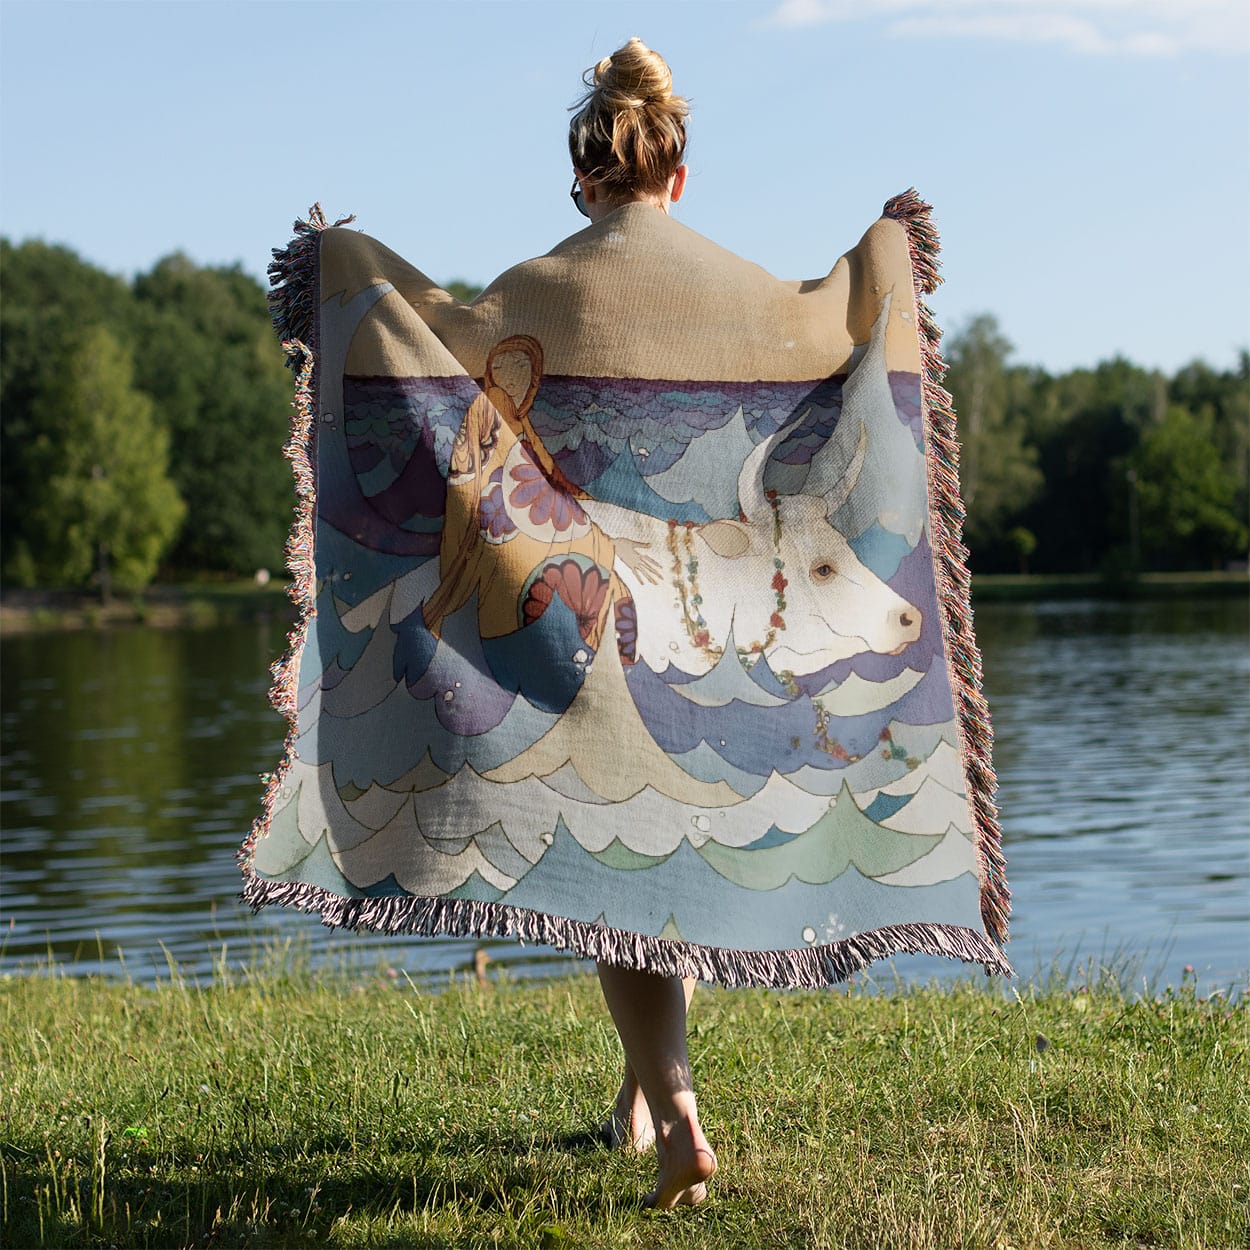 Fantasy Ocean Woven Blanket Held on a Woman's Back Outside